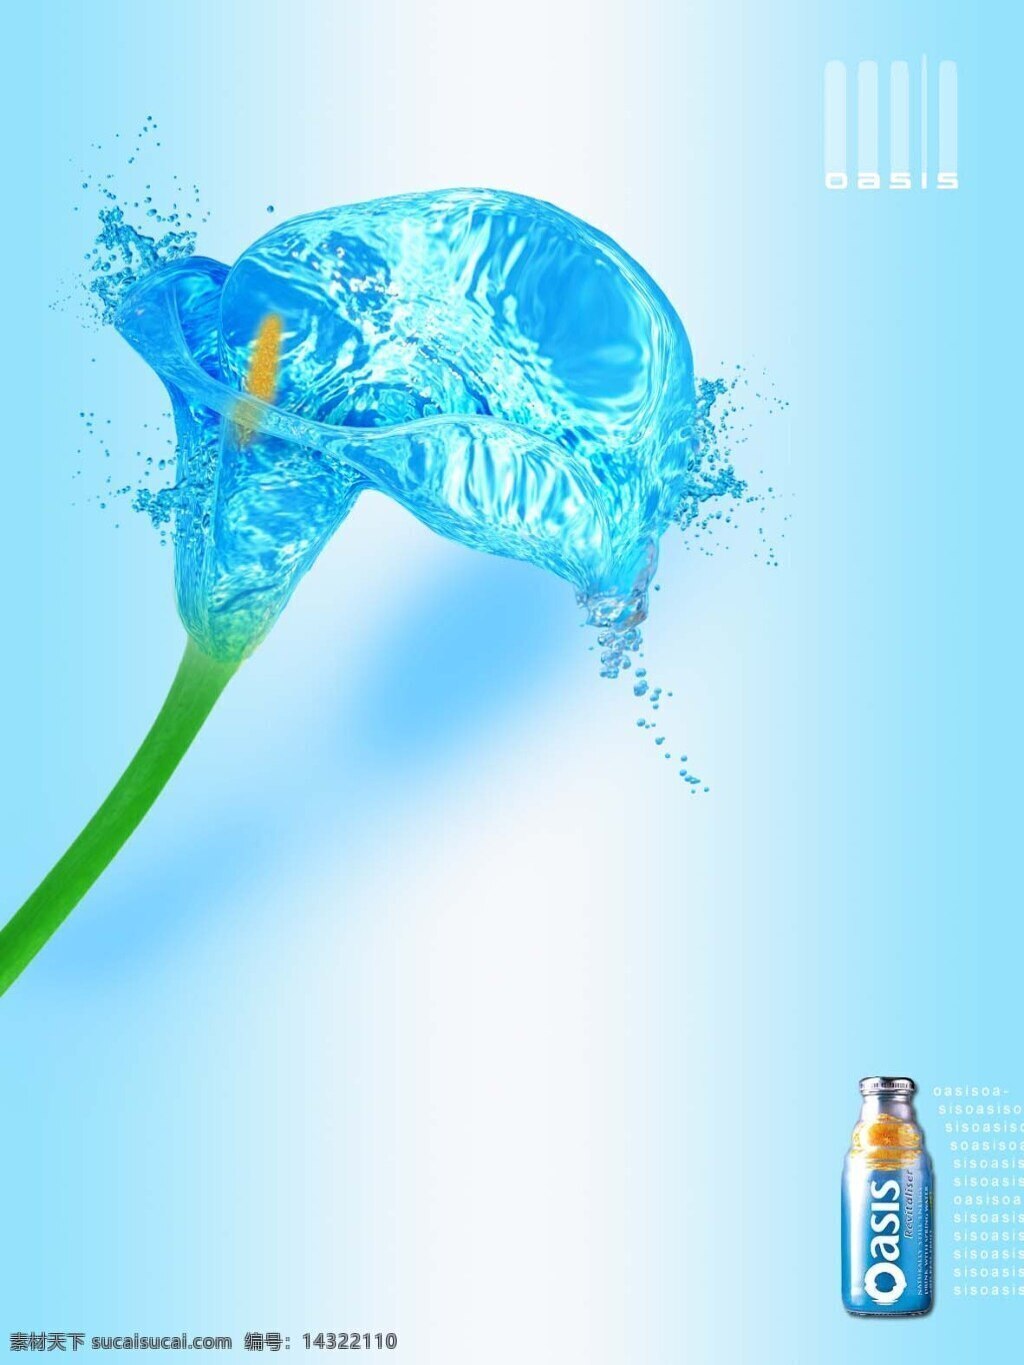 水 百合 汽水 广告 花 青色 天蓝色